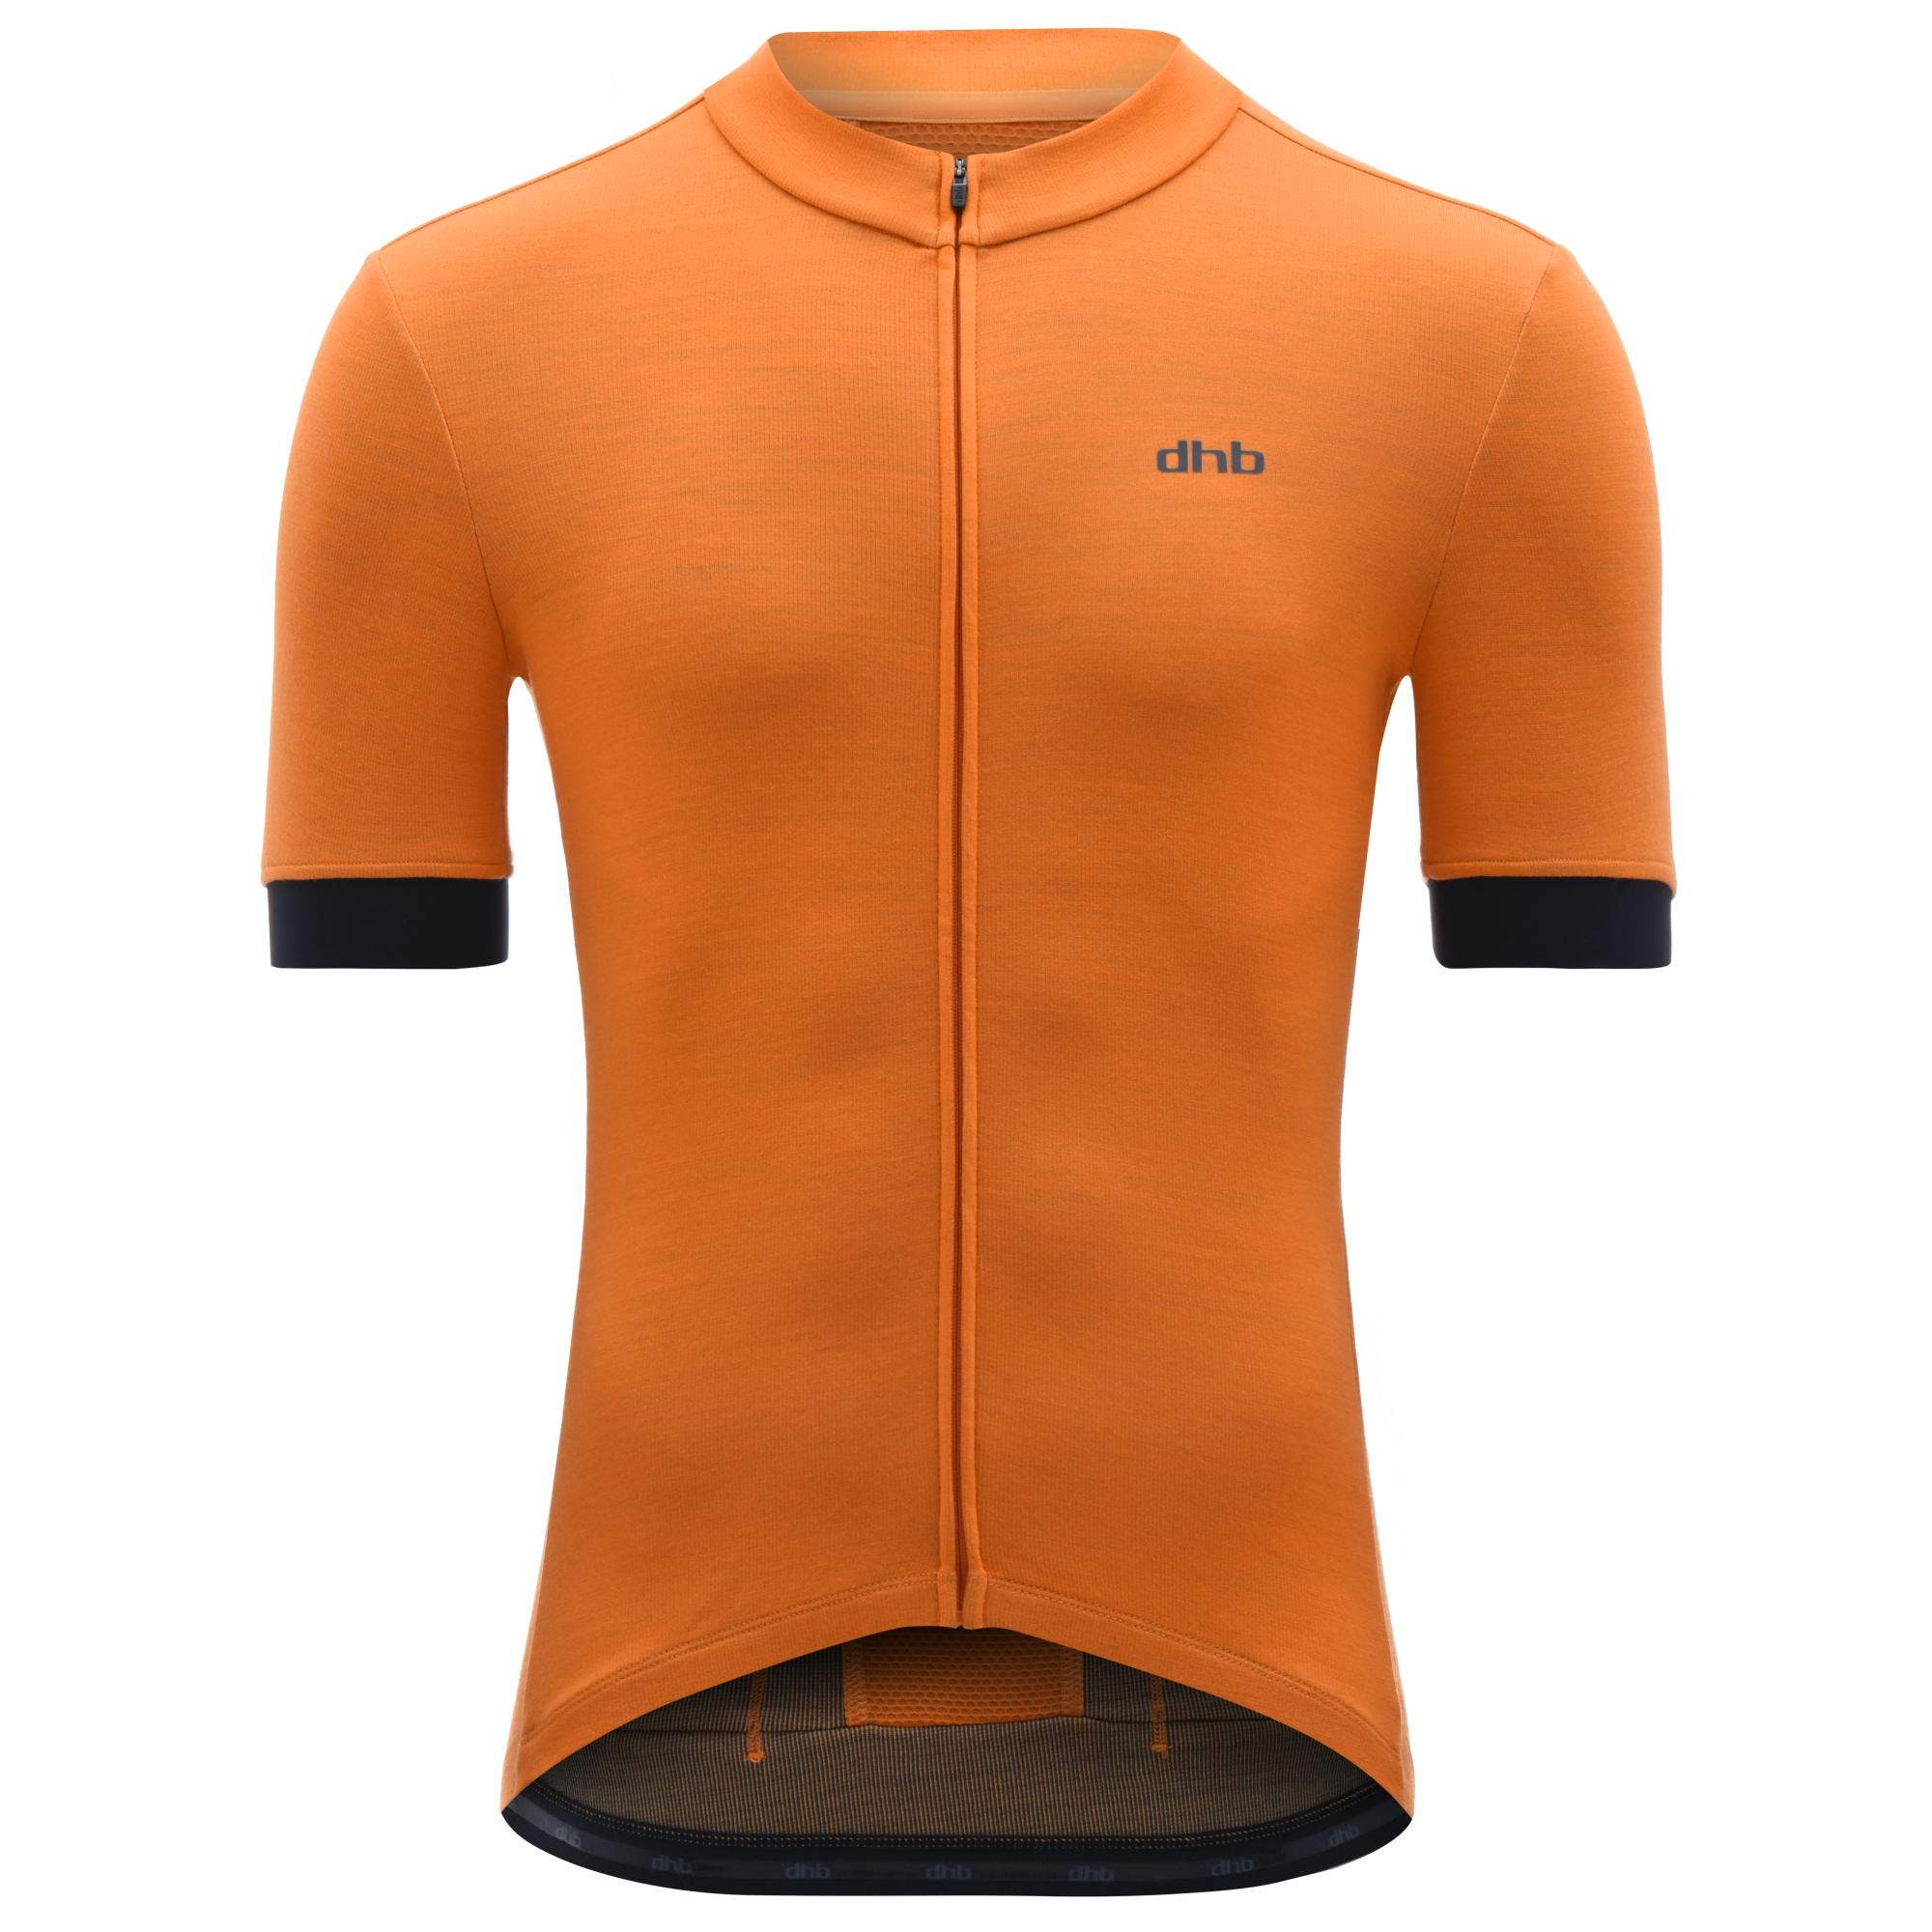 Dhb Merino Short Sleeve Jersey - Orange